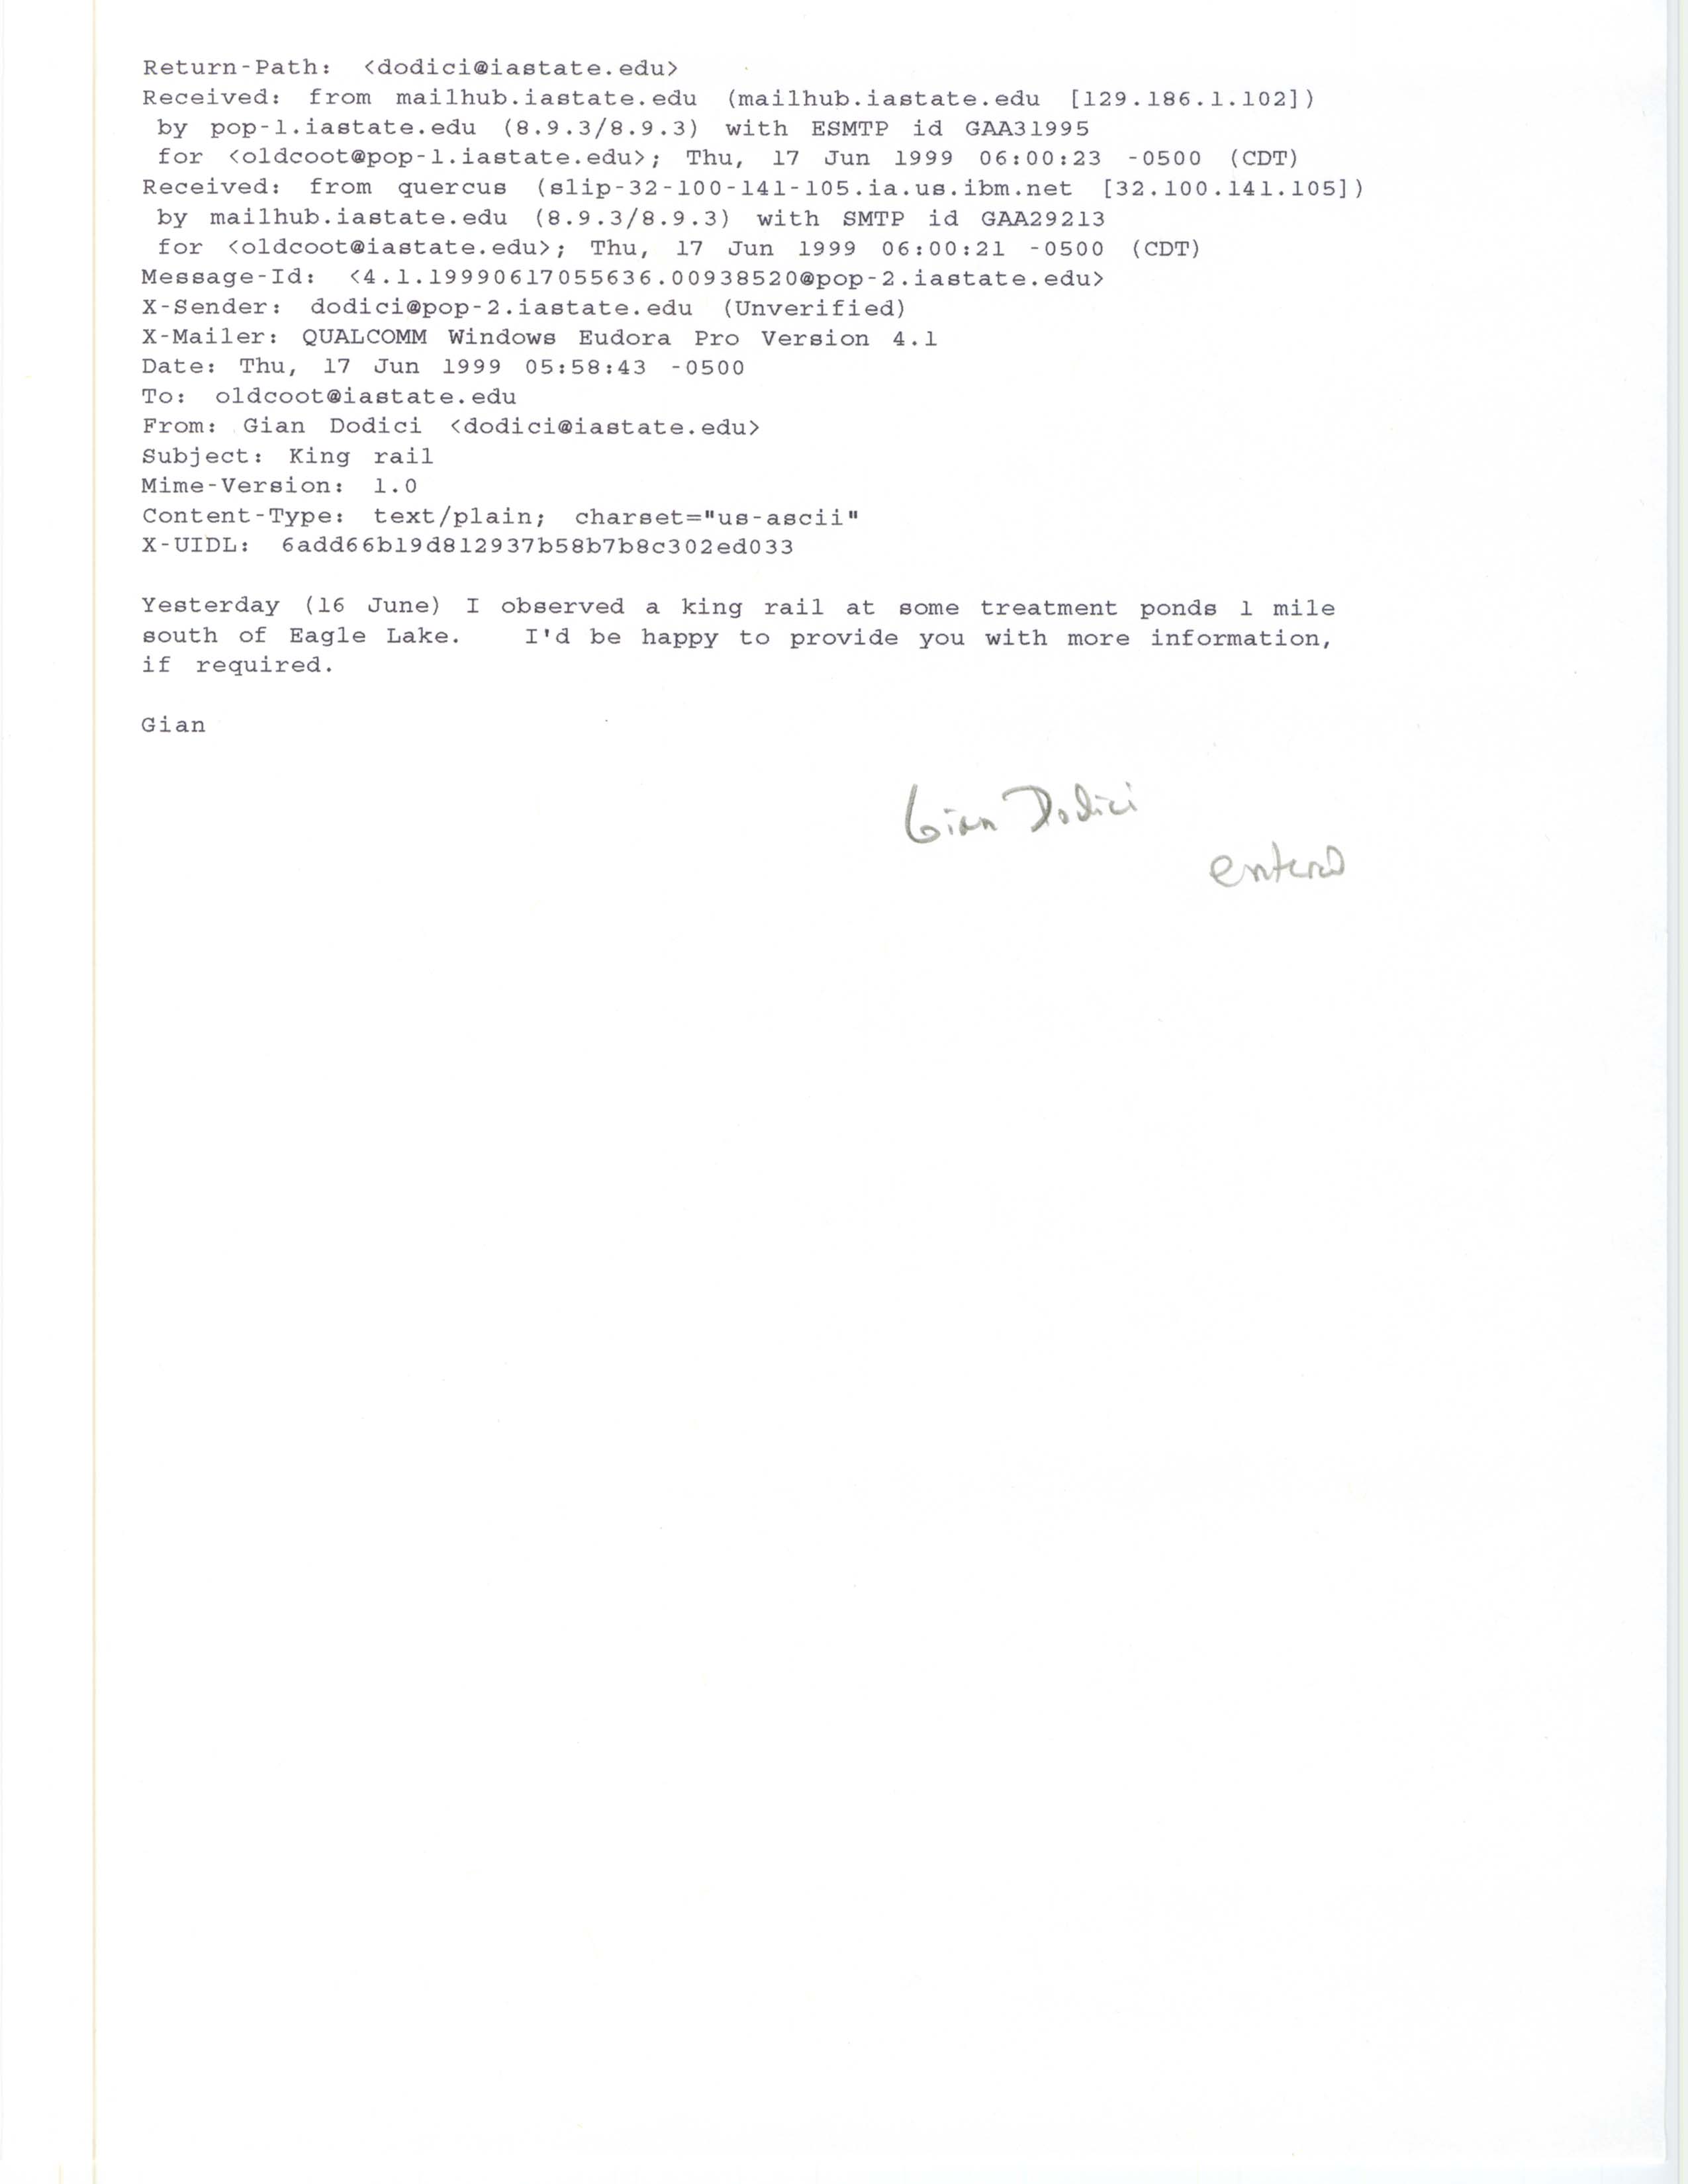 Gian Dodici email to Jim Dinsmore regarding King Rail sighting, June 17, 1999